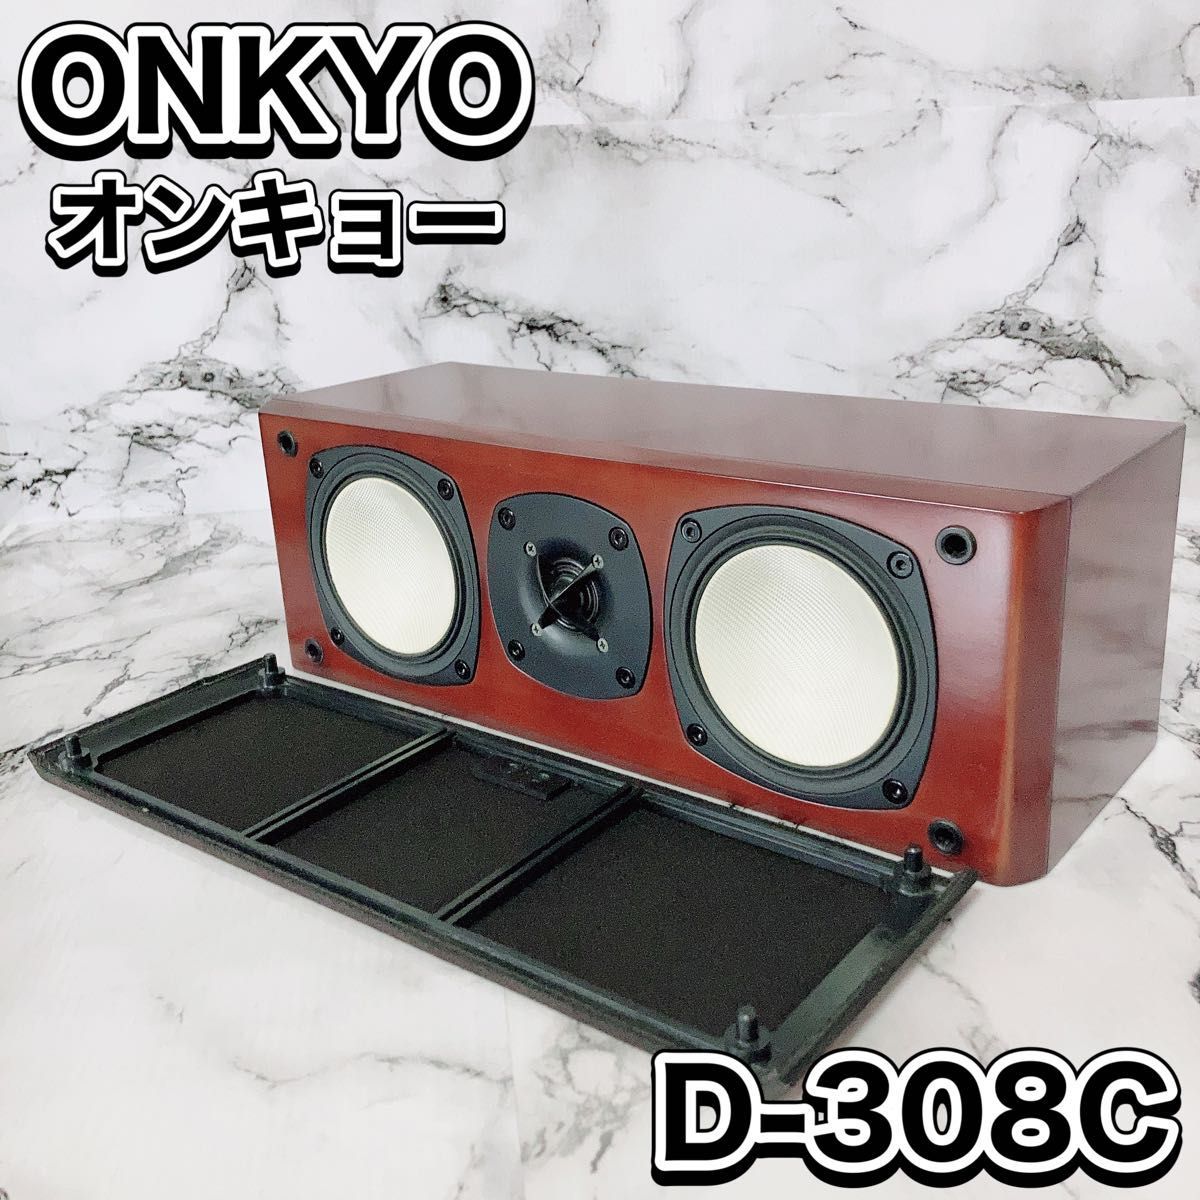 大切な人へのギフト探し ONKYO スピーカー D-308C オンキヨー